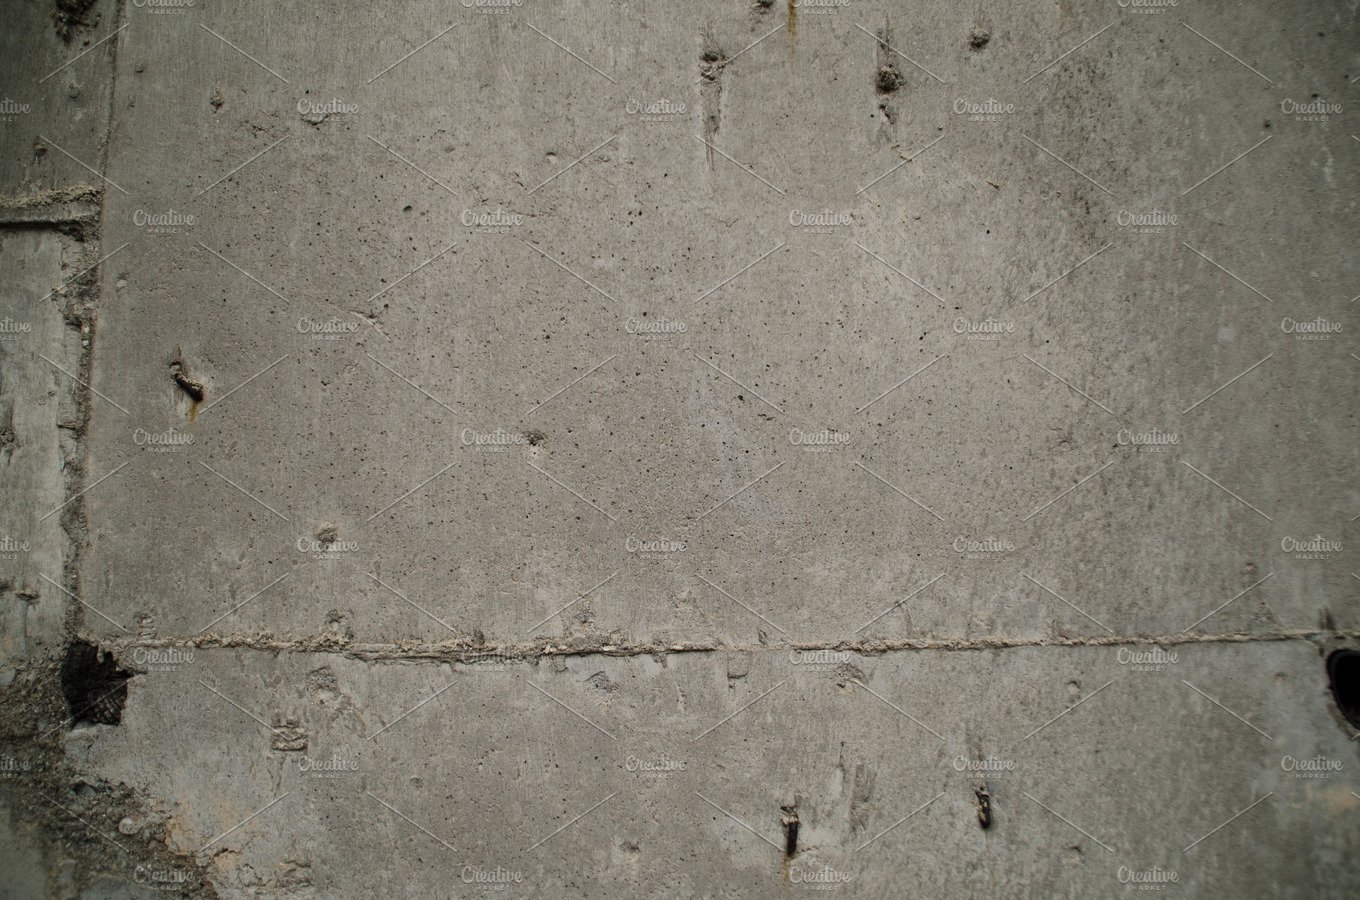 Concret texture cover image.